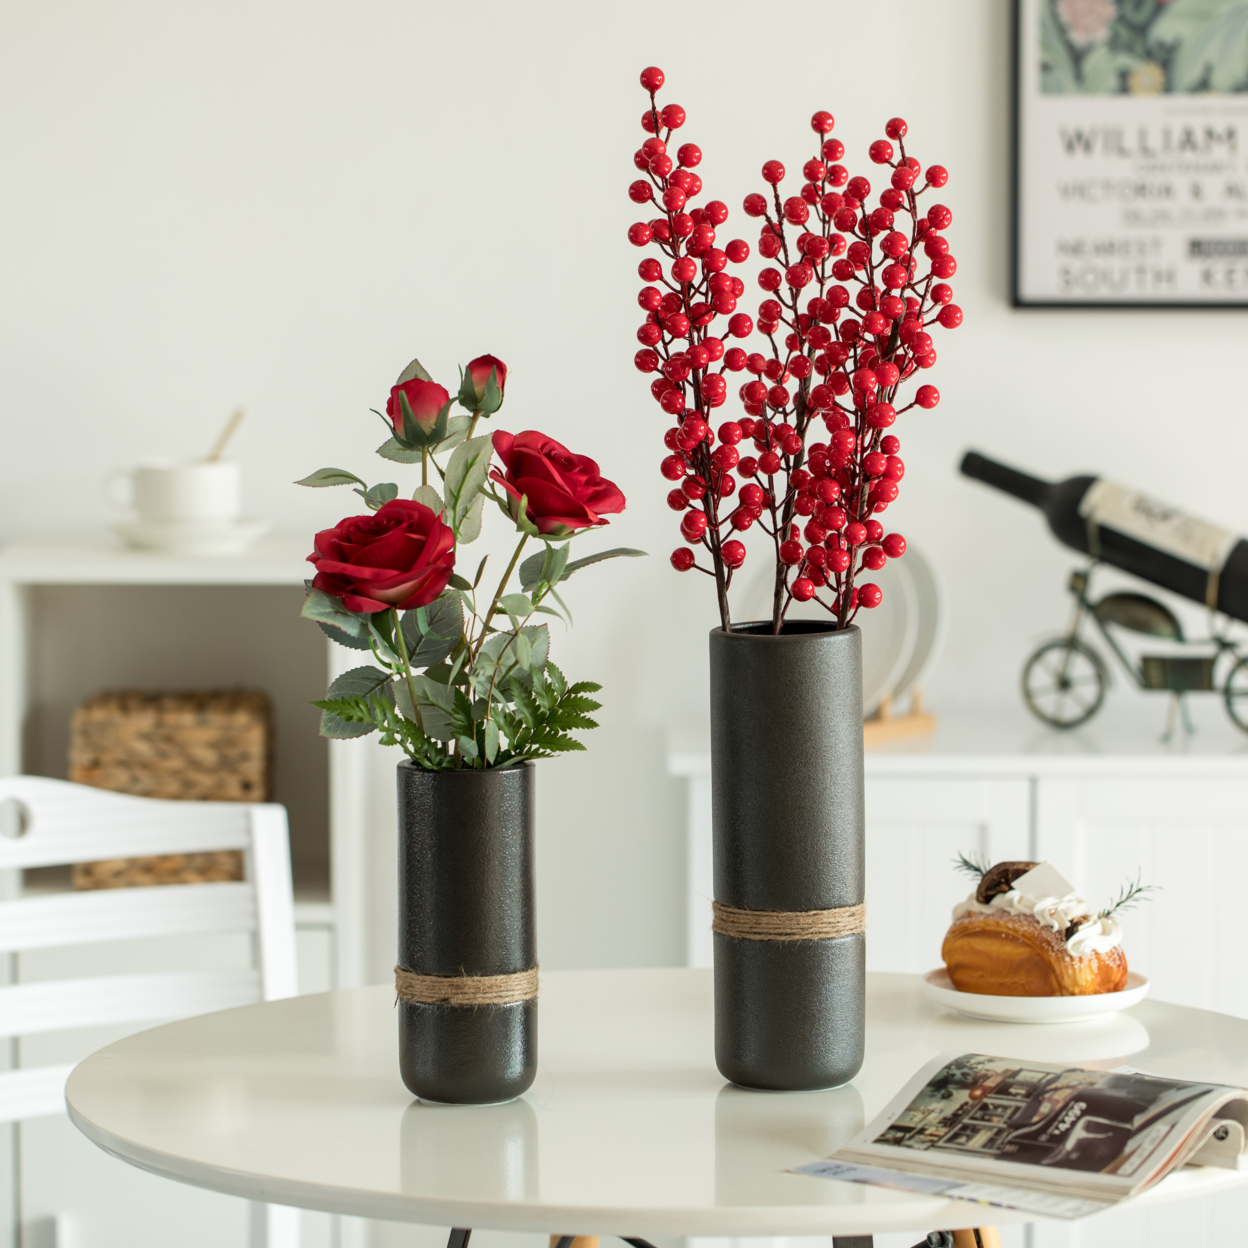 Decorative Modern Ceramic Cylinder Shape Table Vase Flower Holder With Rope - Set Of 2 Black